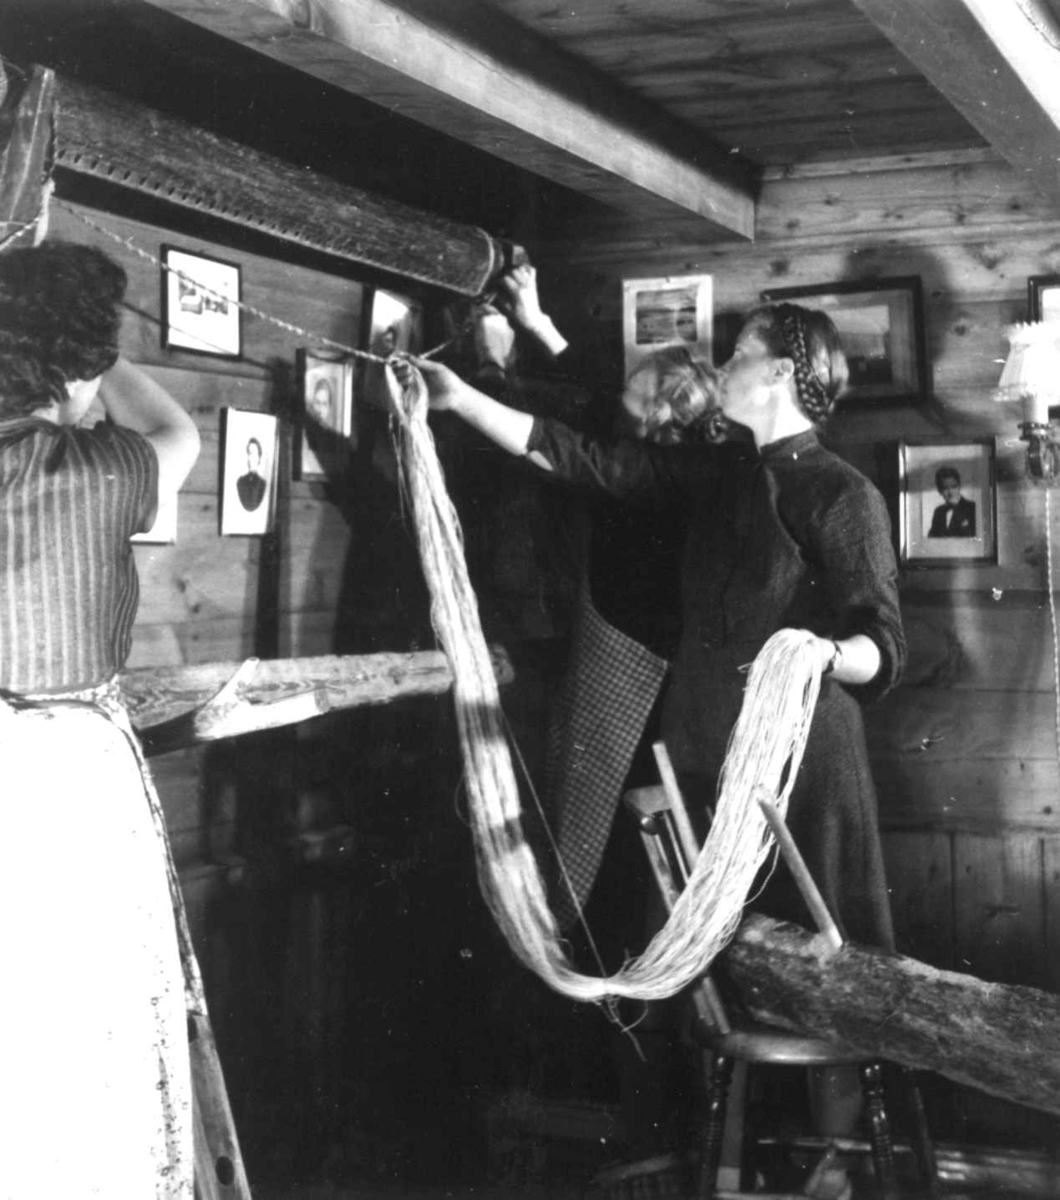 Veving på oppstadgogn. Renningen føres over til vevstol. Liarbø, Fitjar, Hordaland 1956.